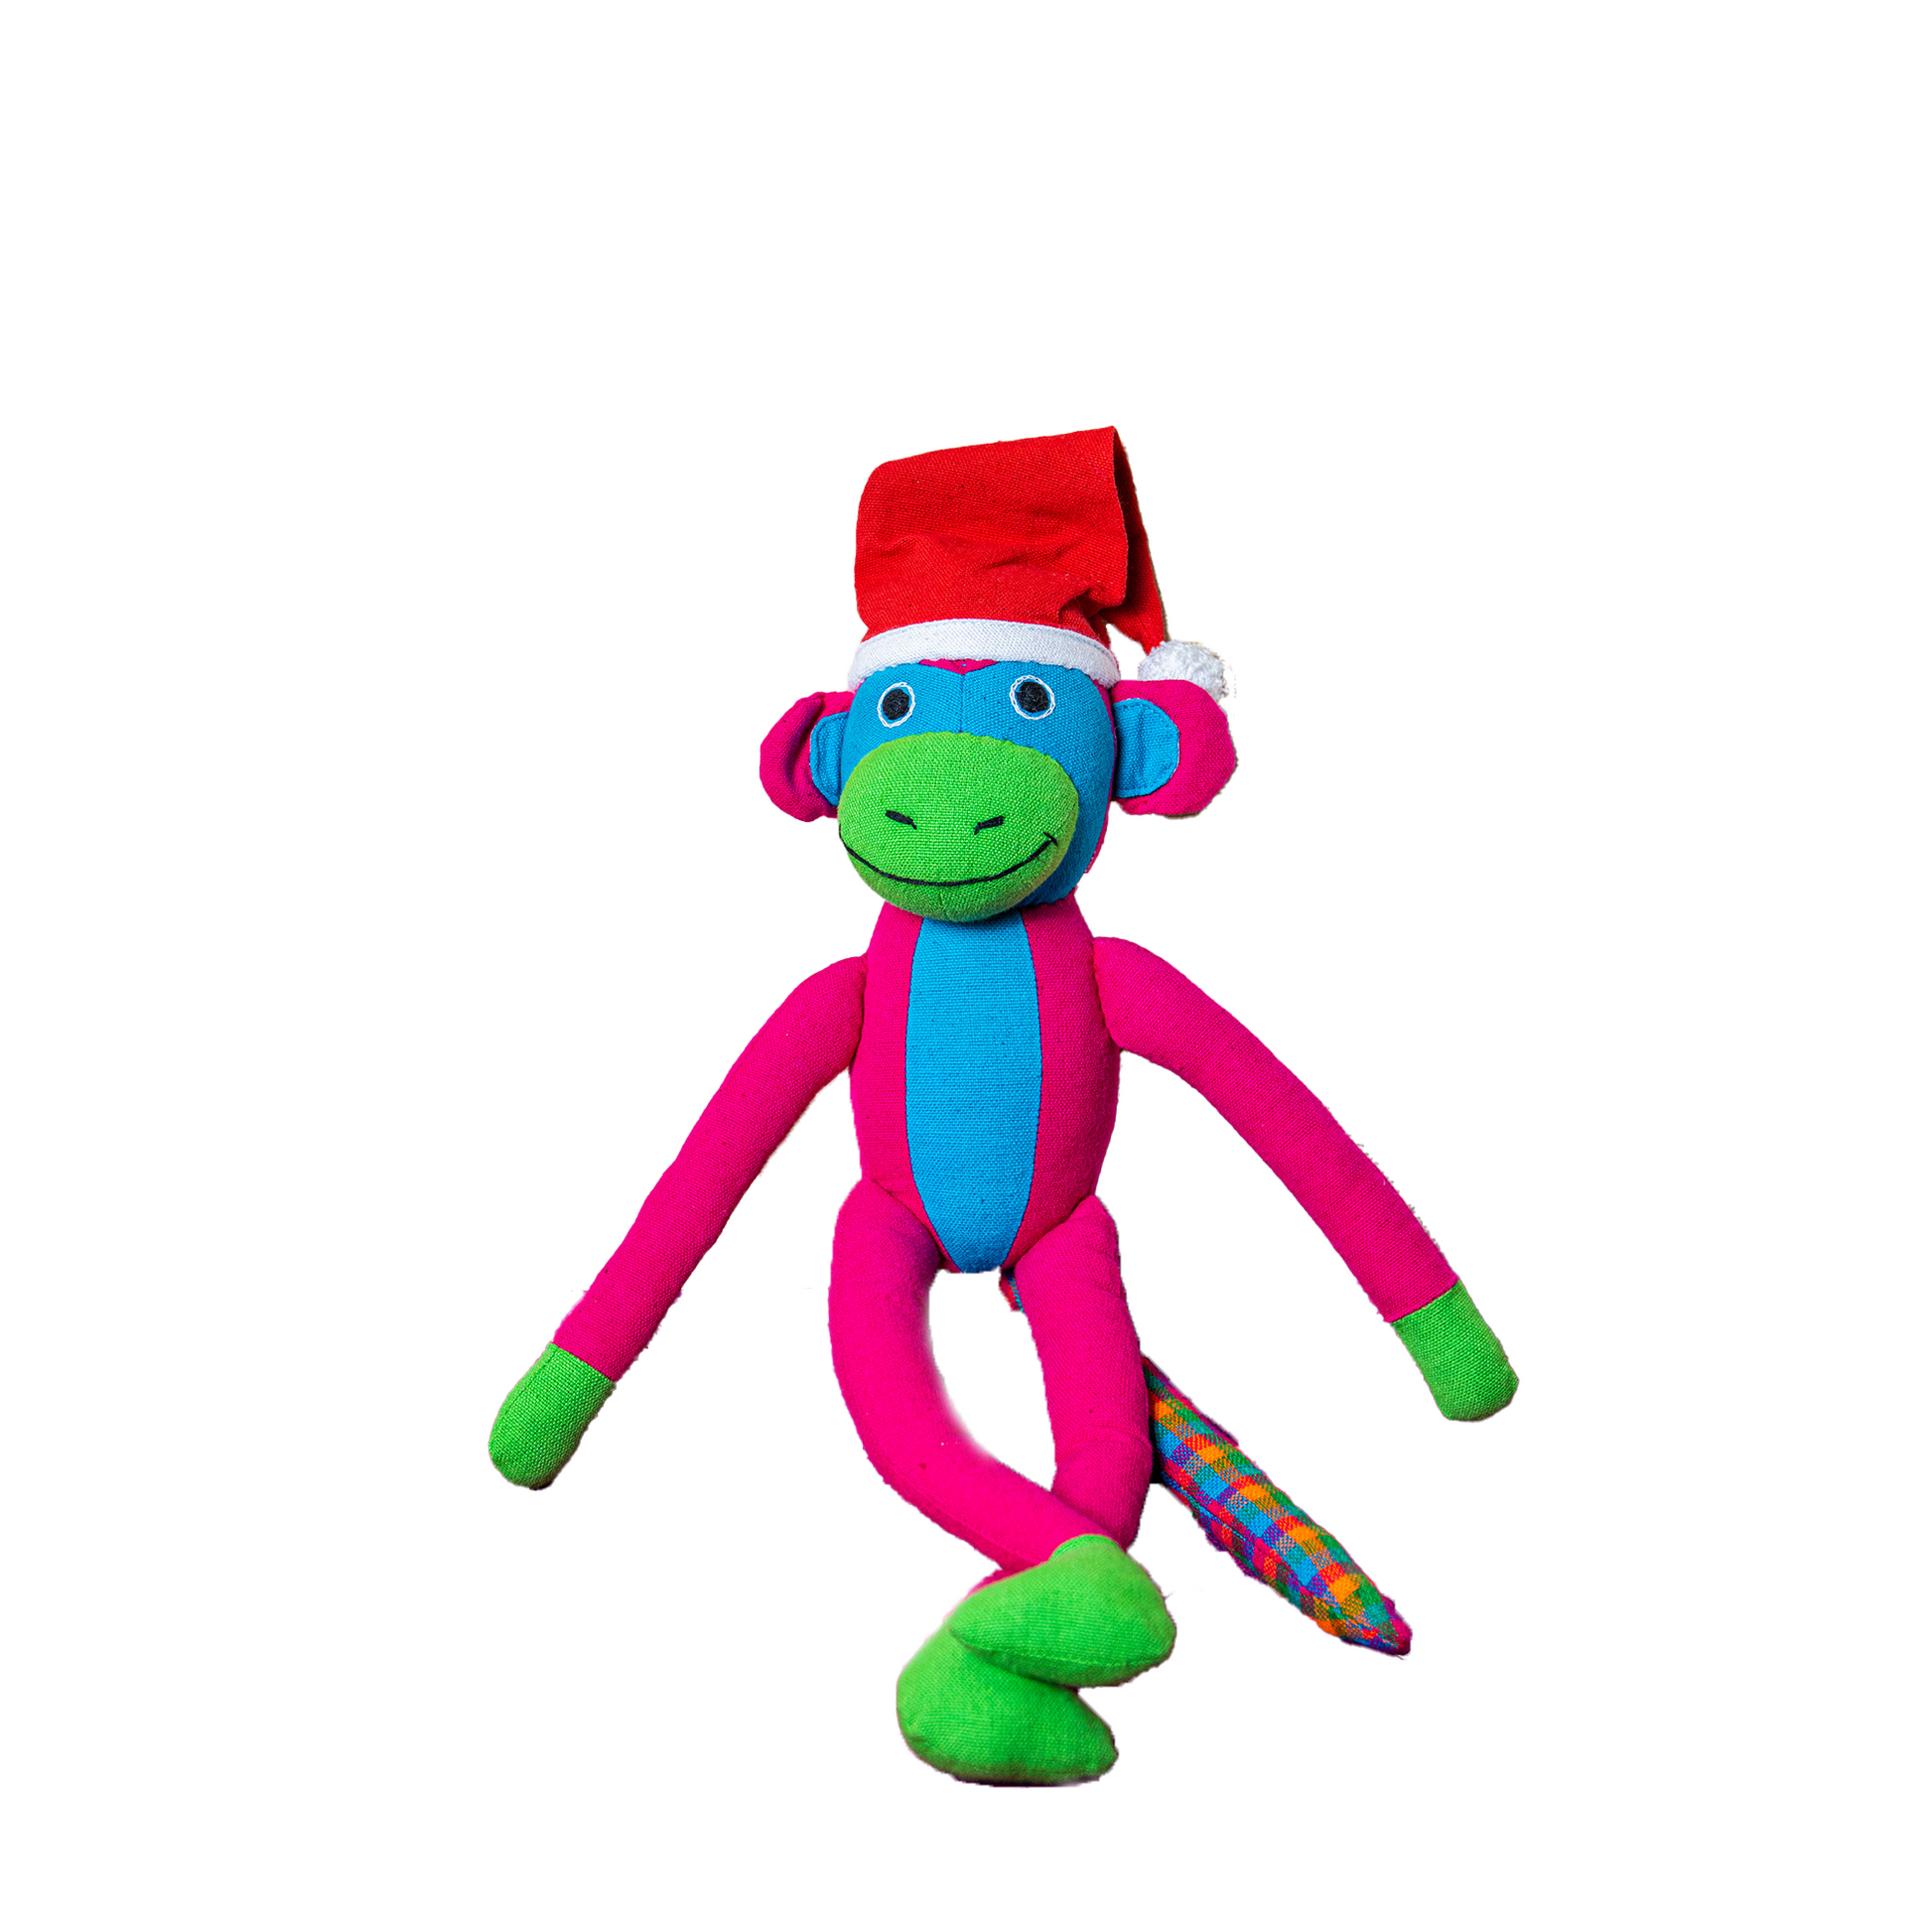 Soft Toy - Monkey Samson - Christmas Edition